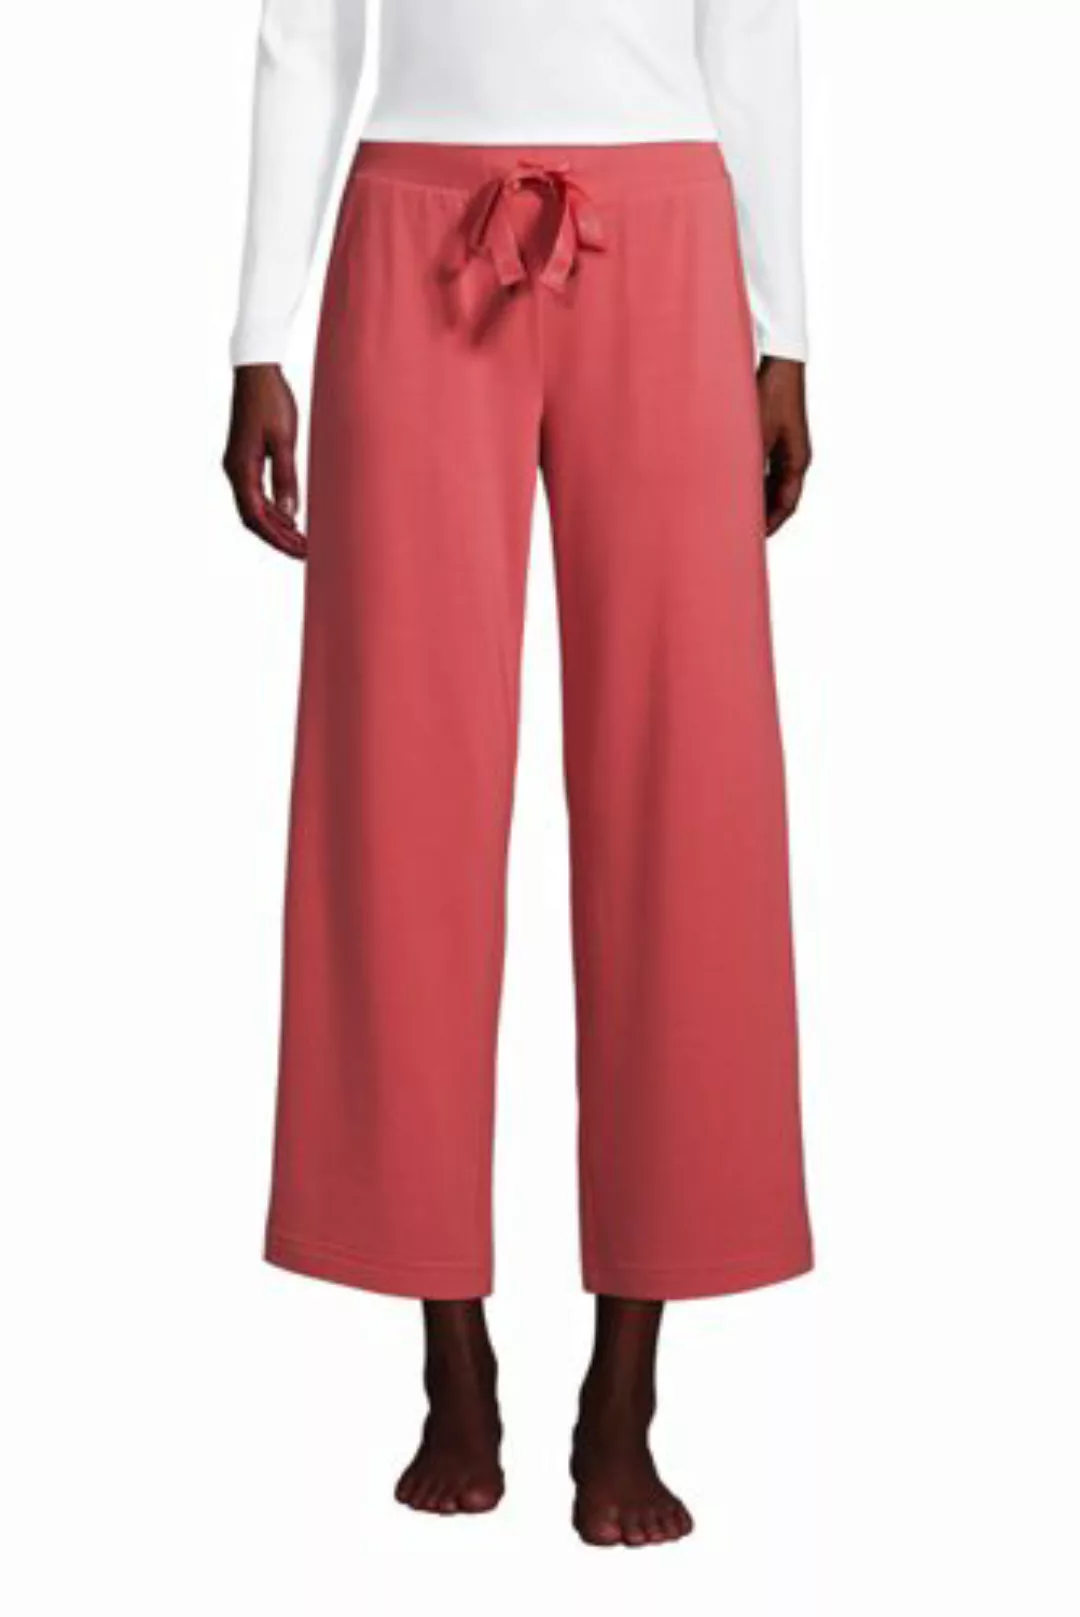 Weite Jersey Pyjama-Hose in 7/8-Länge, Damen, Größe: M Normal, Rot, by Land günstig online kaufen